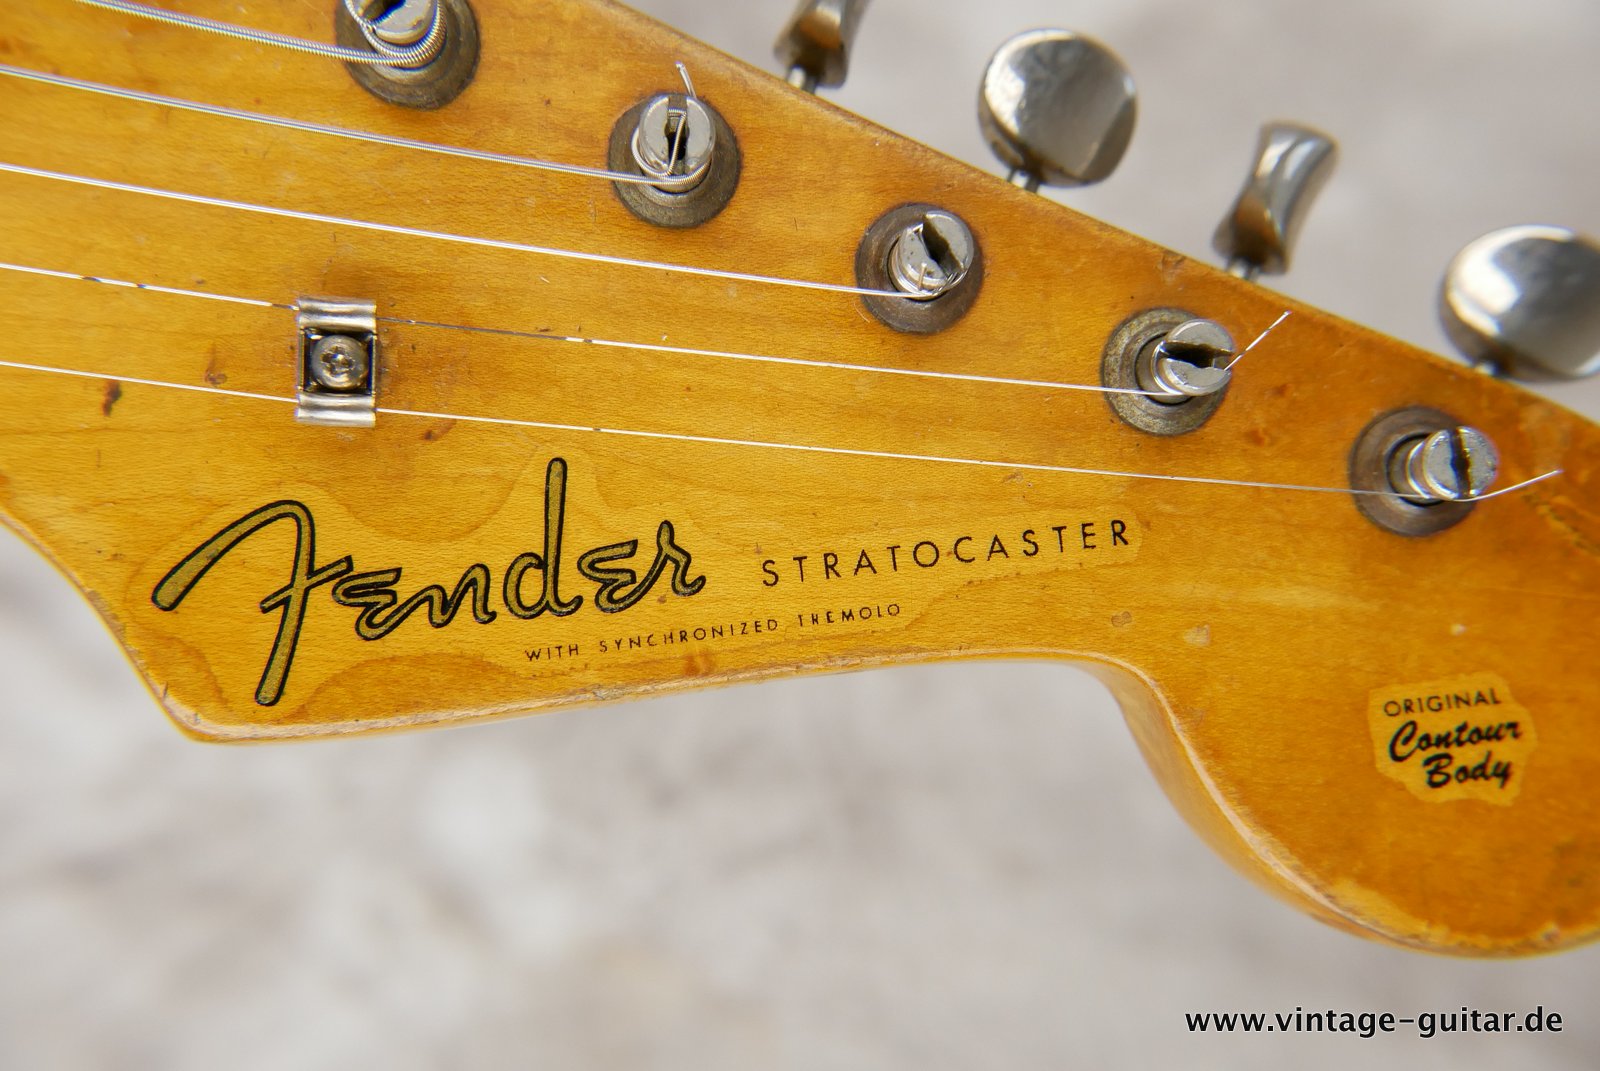 Fender-Stratocaster-1957-fiesta-red-014.JPG